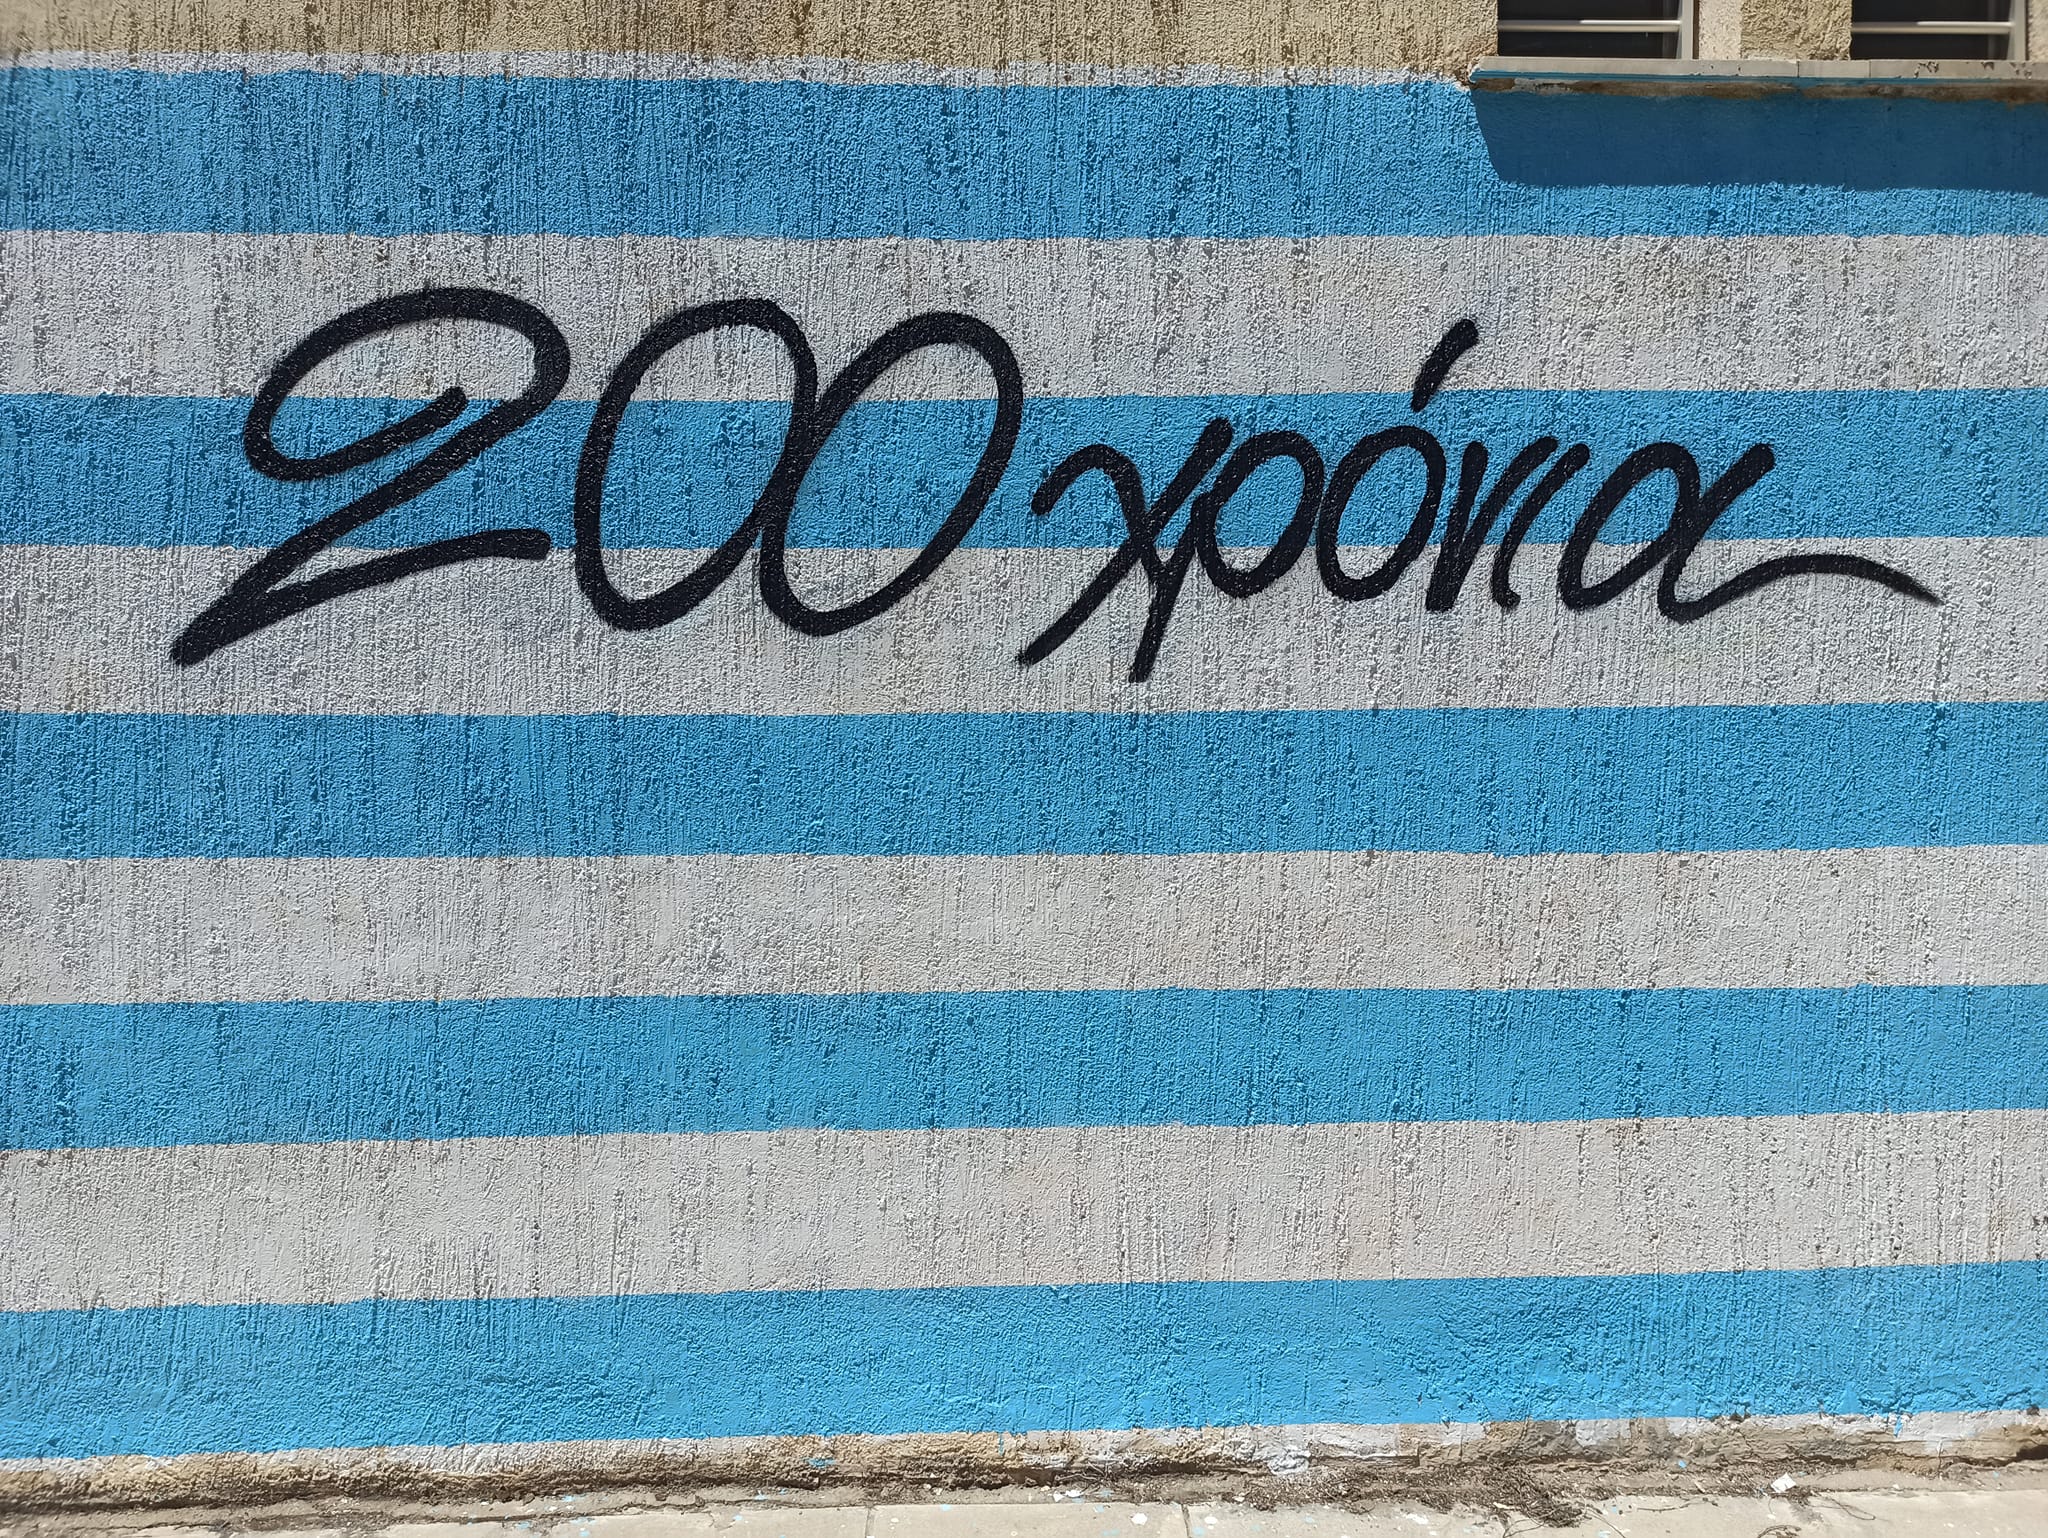 Γκράφιτι Ναύπλιο 200 χρόνια επανάσταση (4)